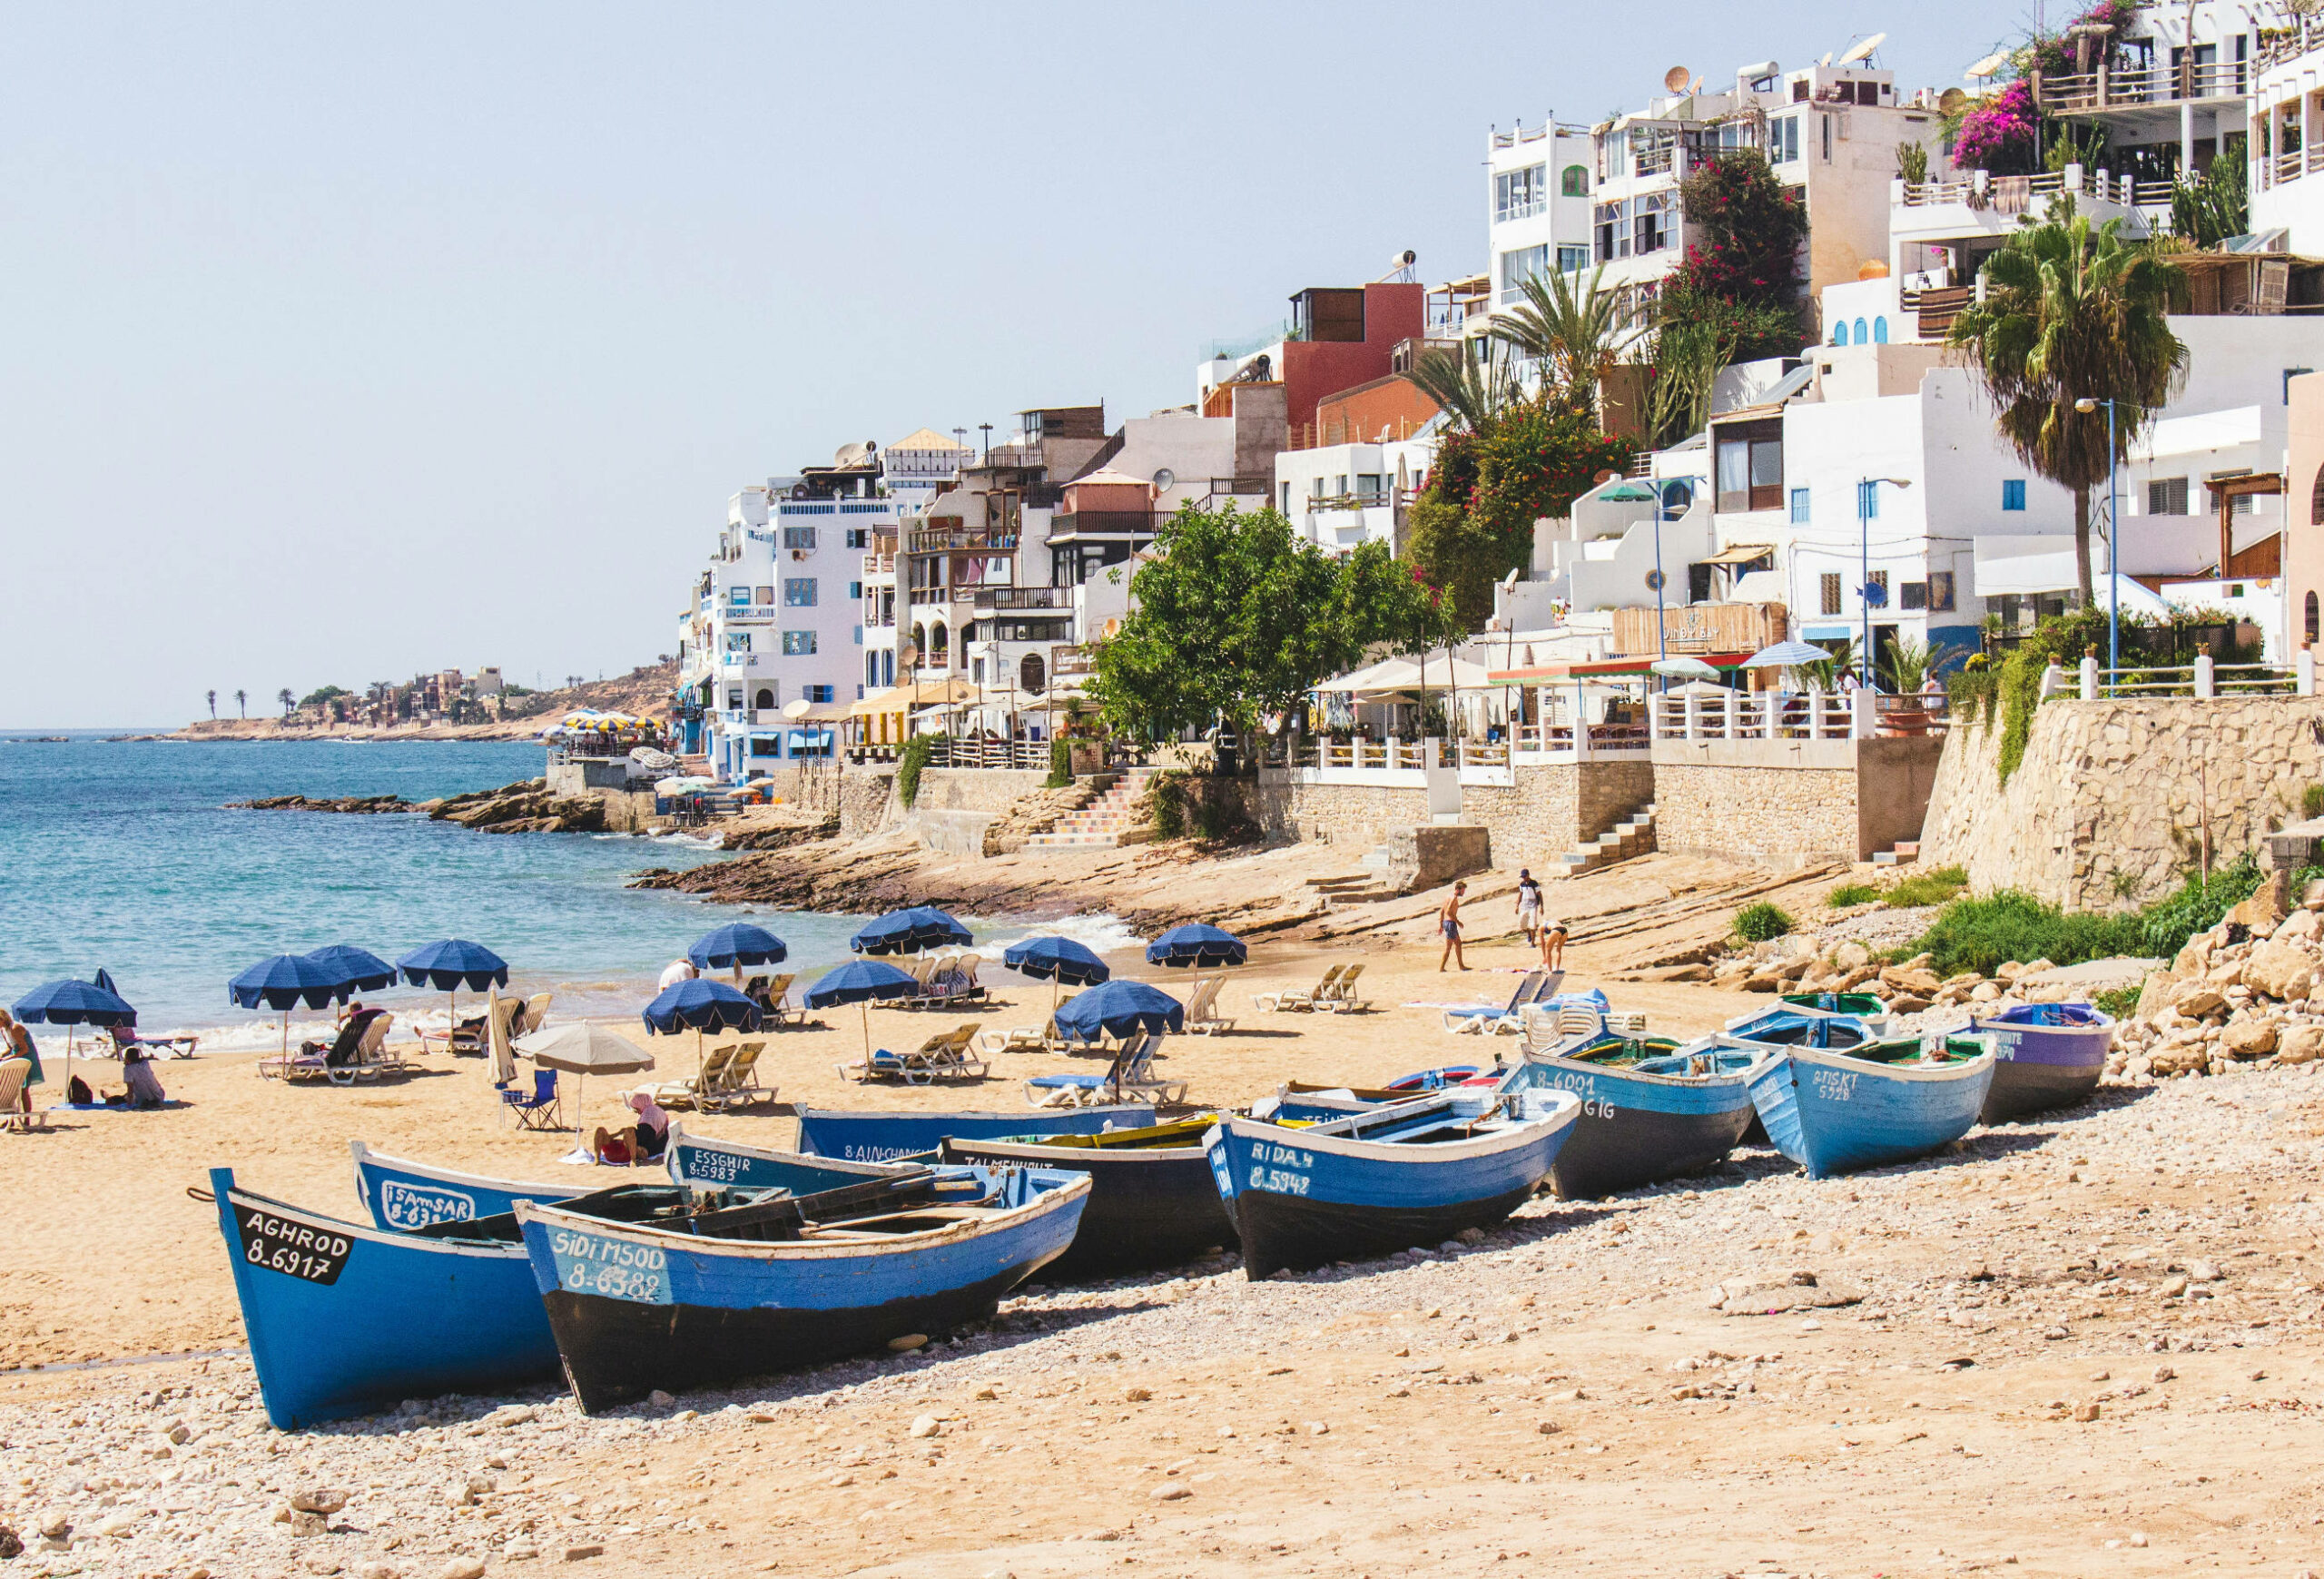 Das Bild zeigt einen Abschnitt von Taghazout Beach in Marokko. Im Vordergrund stehen einige blaue Boote. Im Hintergrund ist der Strand mit Liegen und Sonnenschirmen. Dazwischen laufen einige Menschen. Rechts im Bild sieht man viele weiße Häuser mit Pflanzen dazwischen.